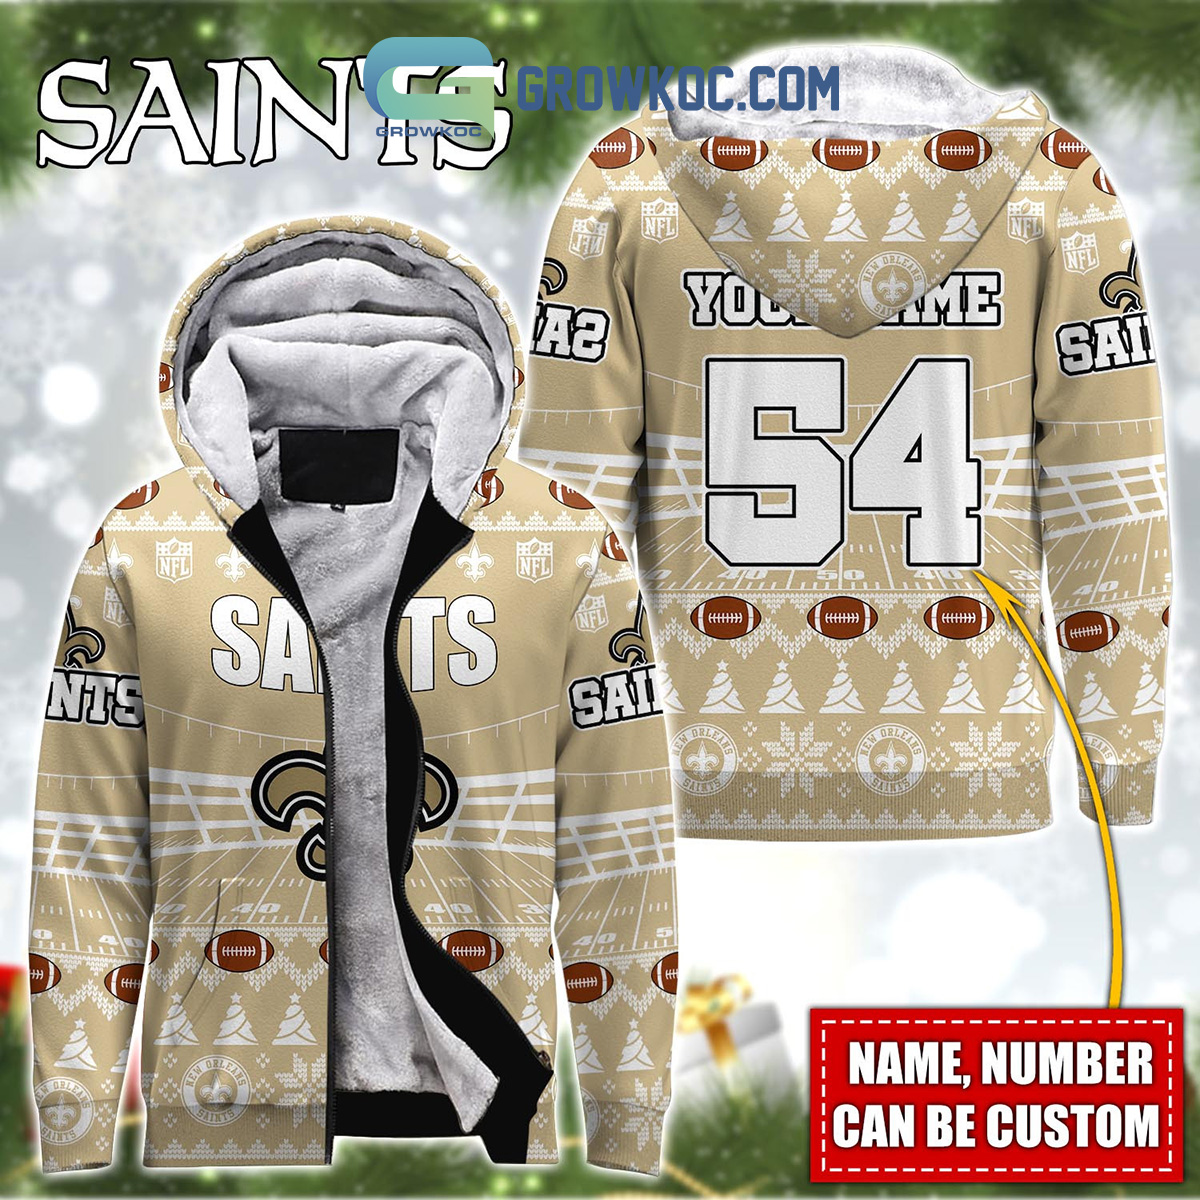 saints veterans hoodie